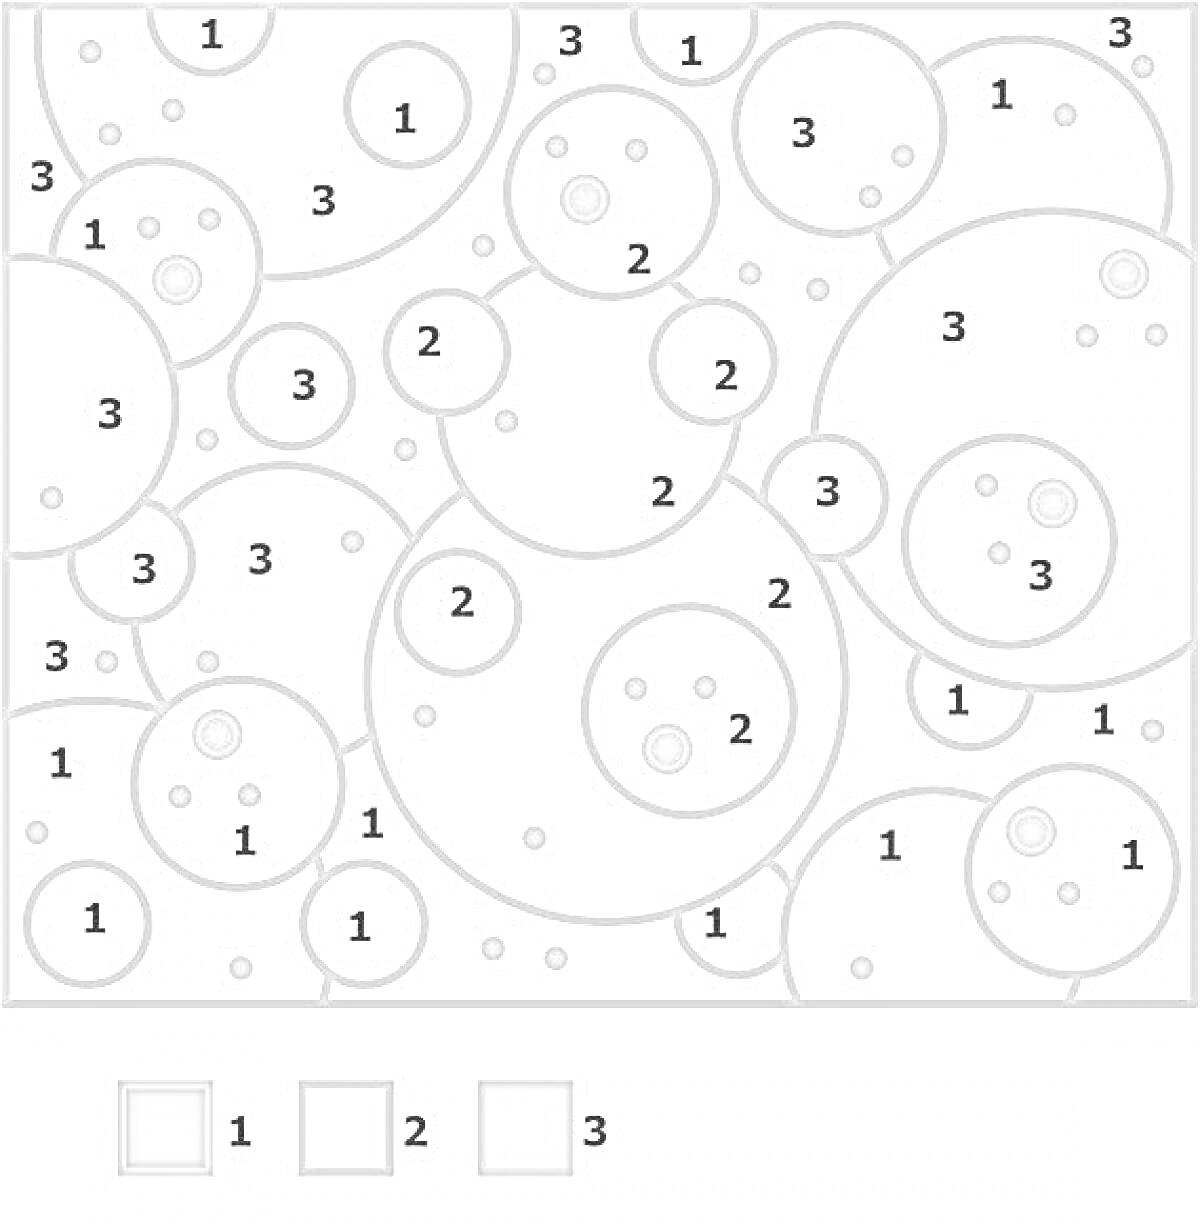 Раскраска Раскраска с кругами разного размера, числами 1, 2, 3 внутри кругов и оранжевыми точками